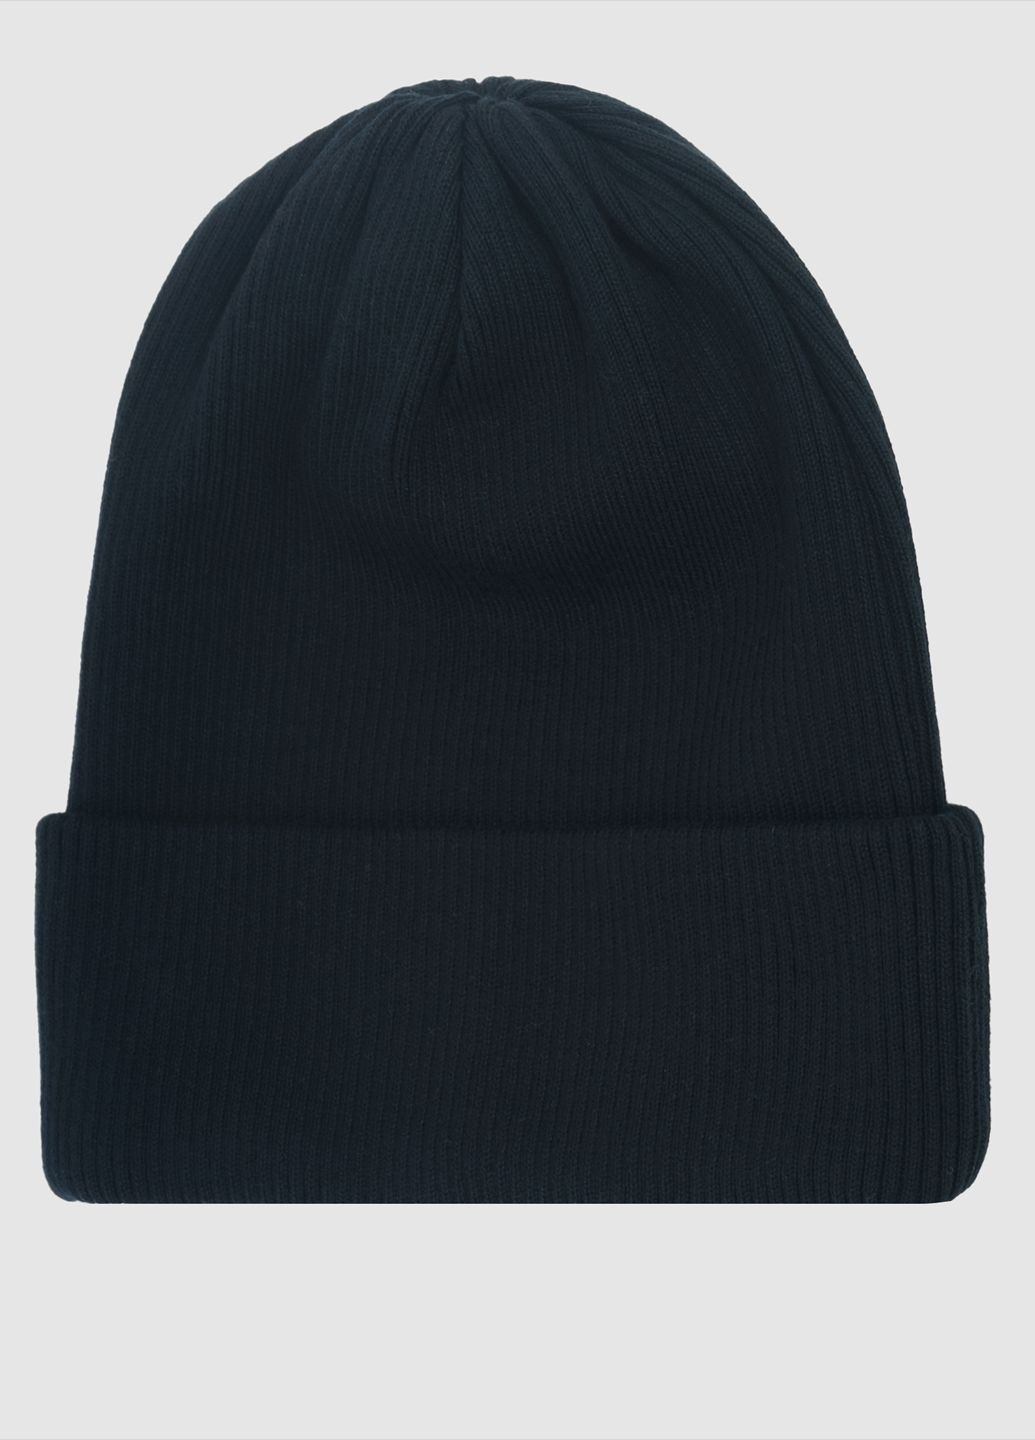 Шапка мужская черная Arber шапка 12 rib2*2 (285787731)